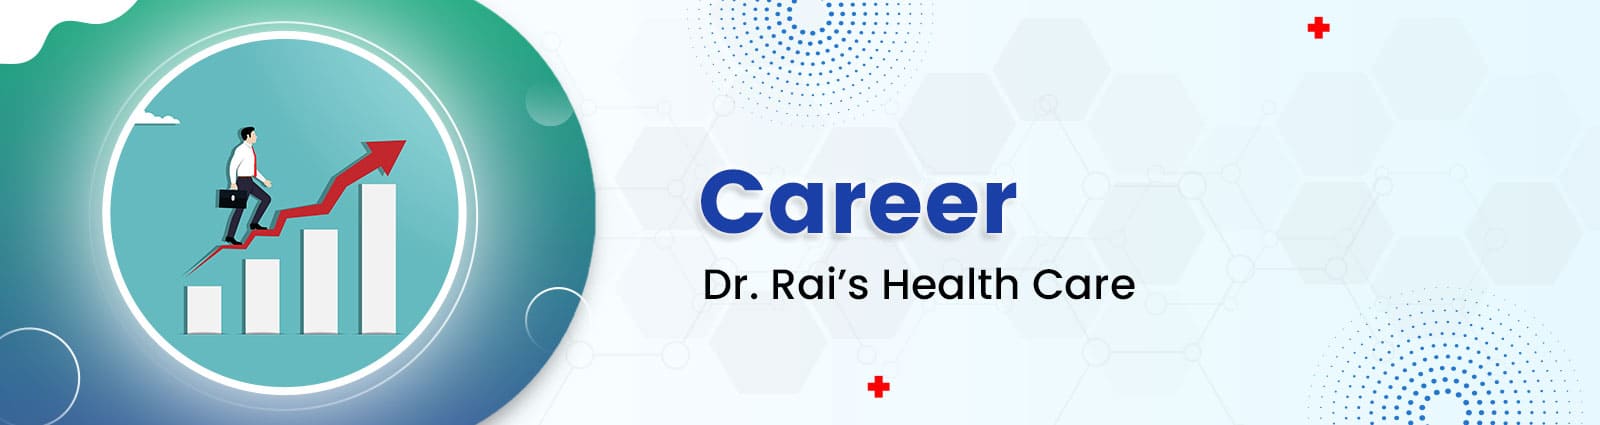 Dr. Rai’s career